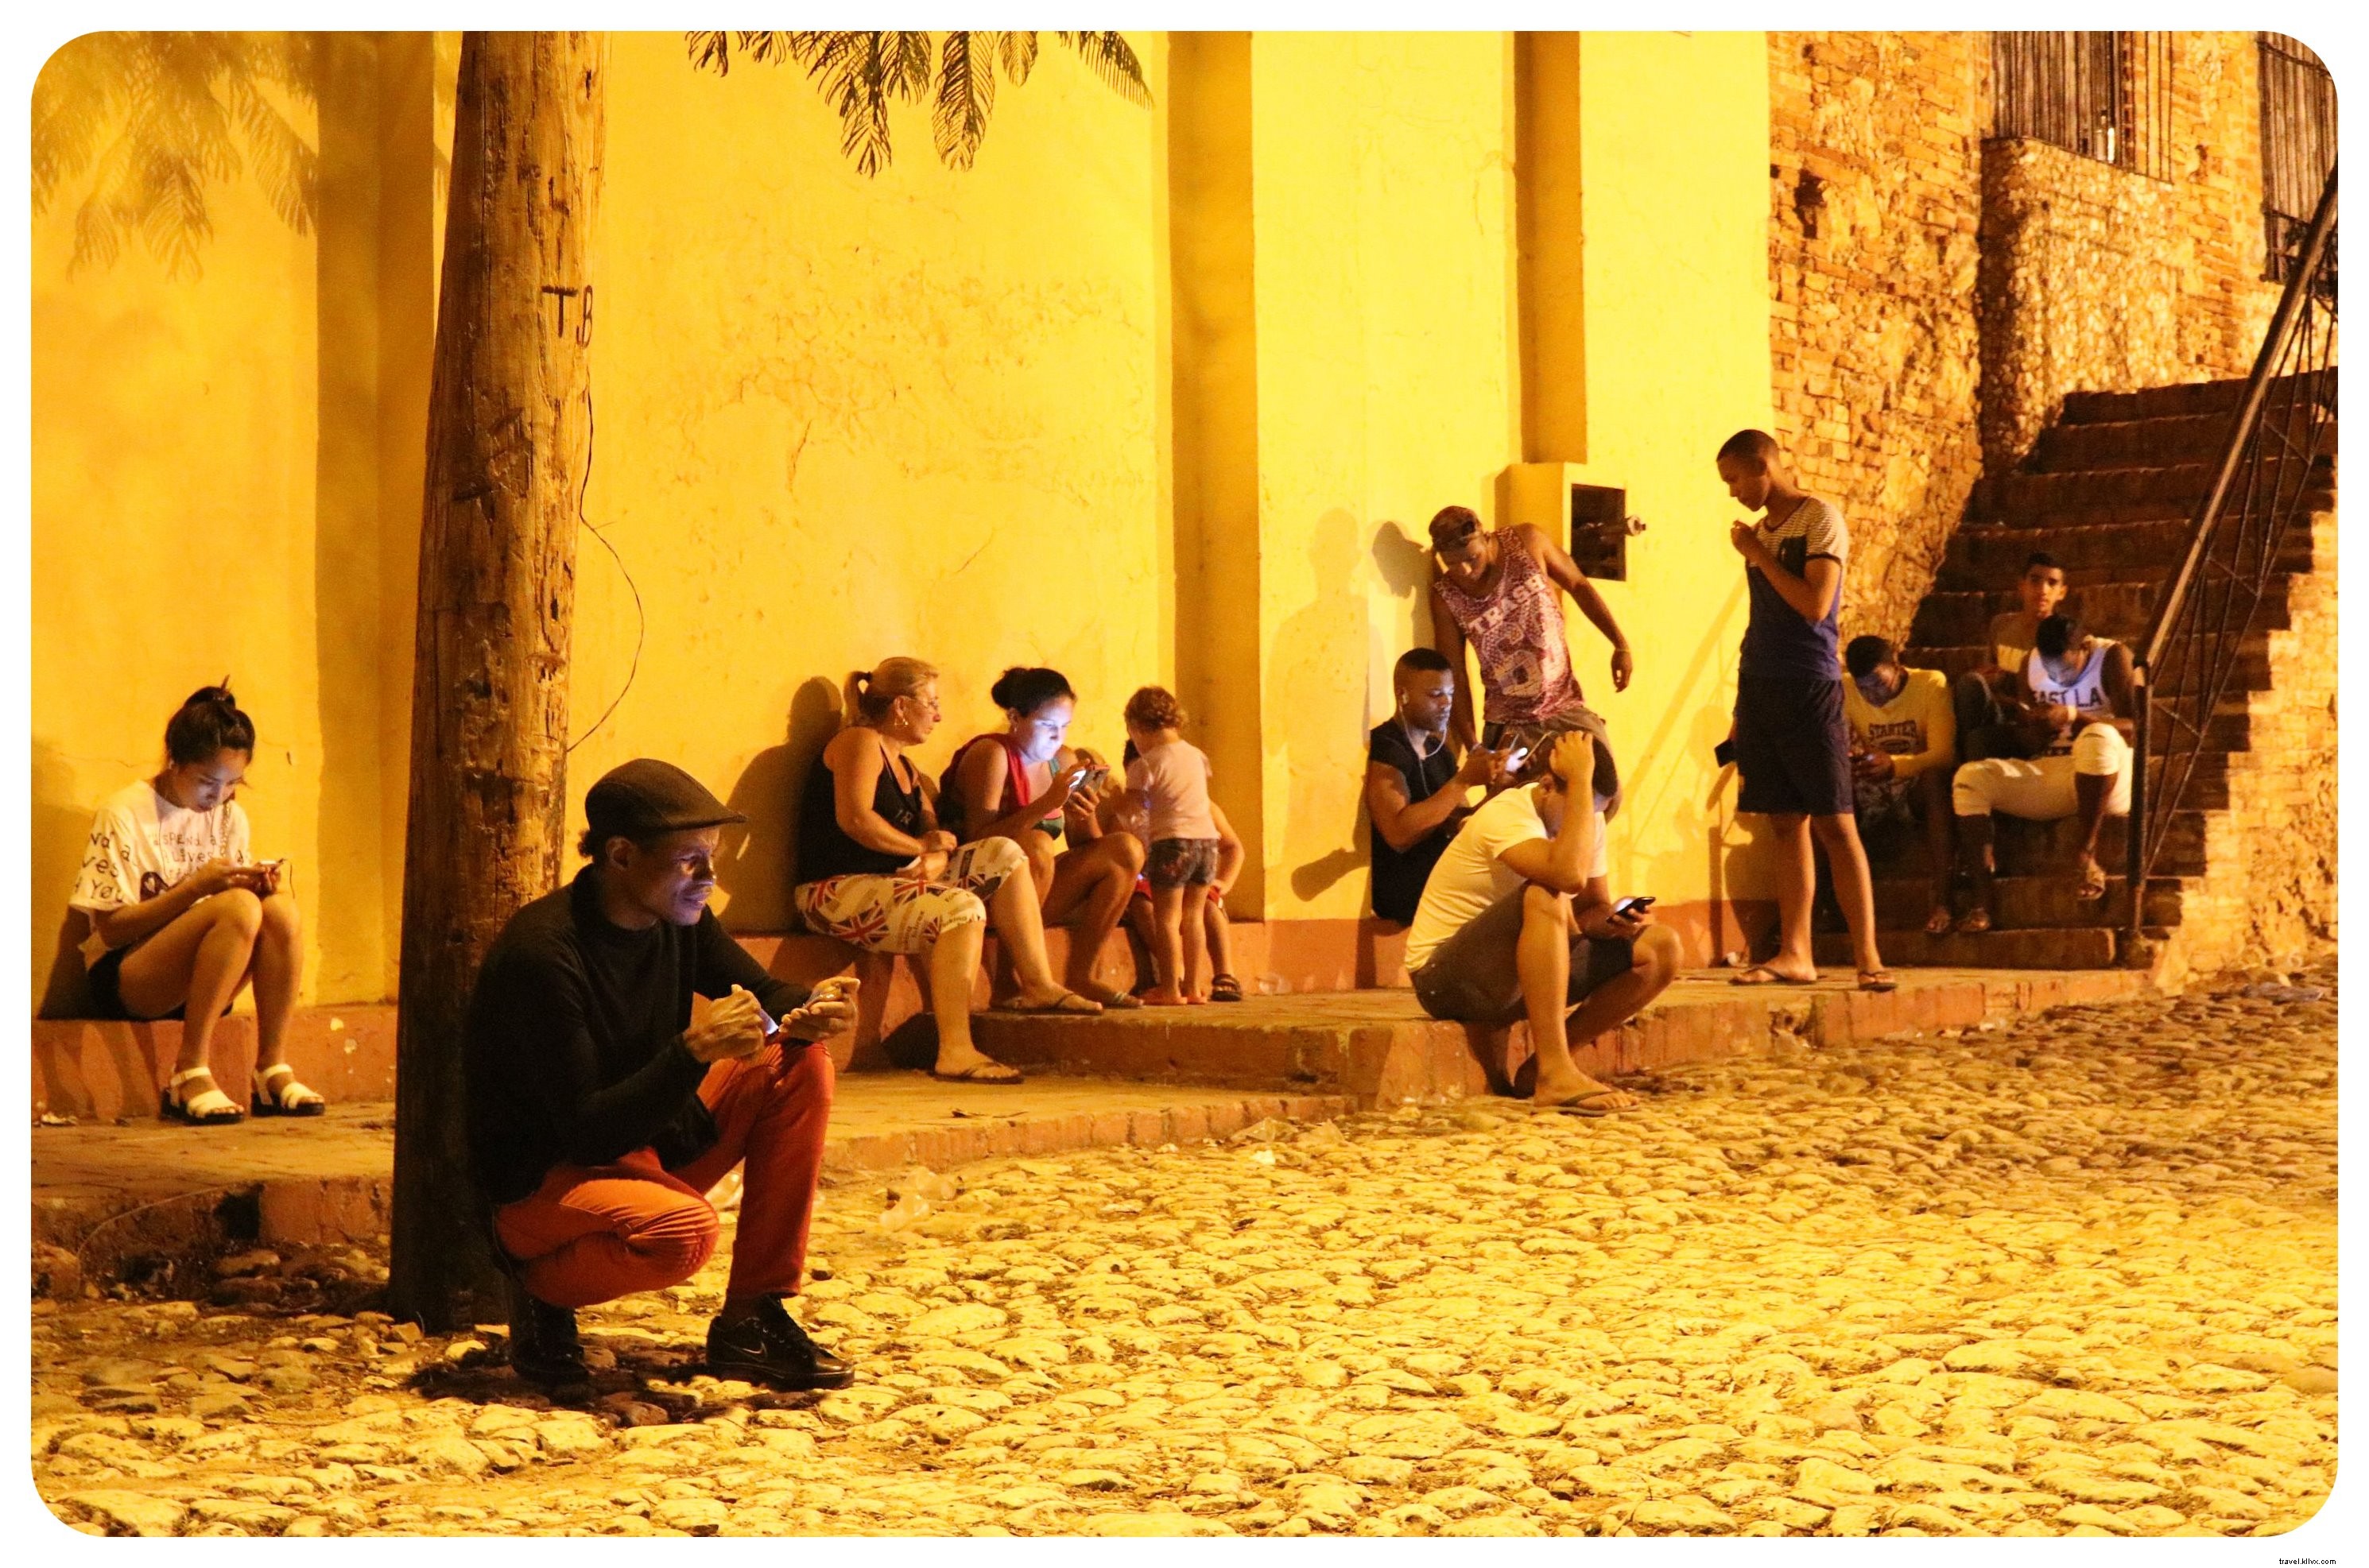 Kuba:10 Hal Yang Perlu Diketahui Sebelum Anda Pergi